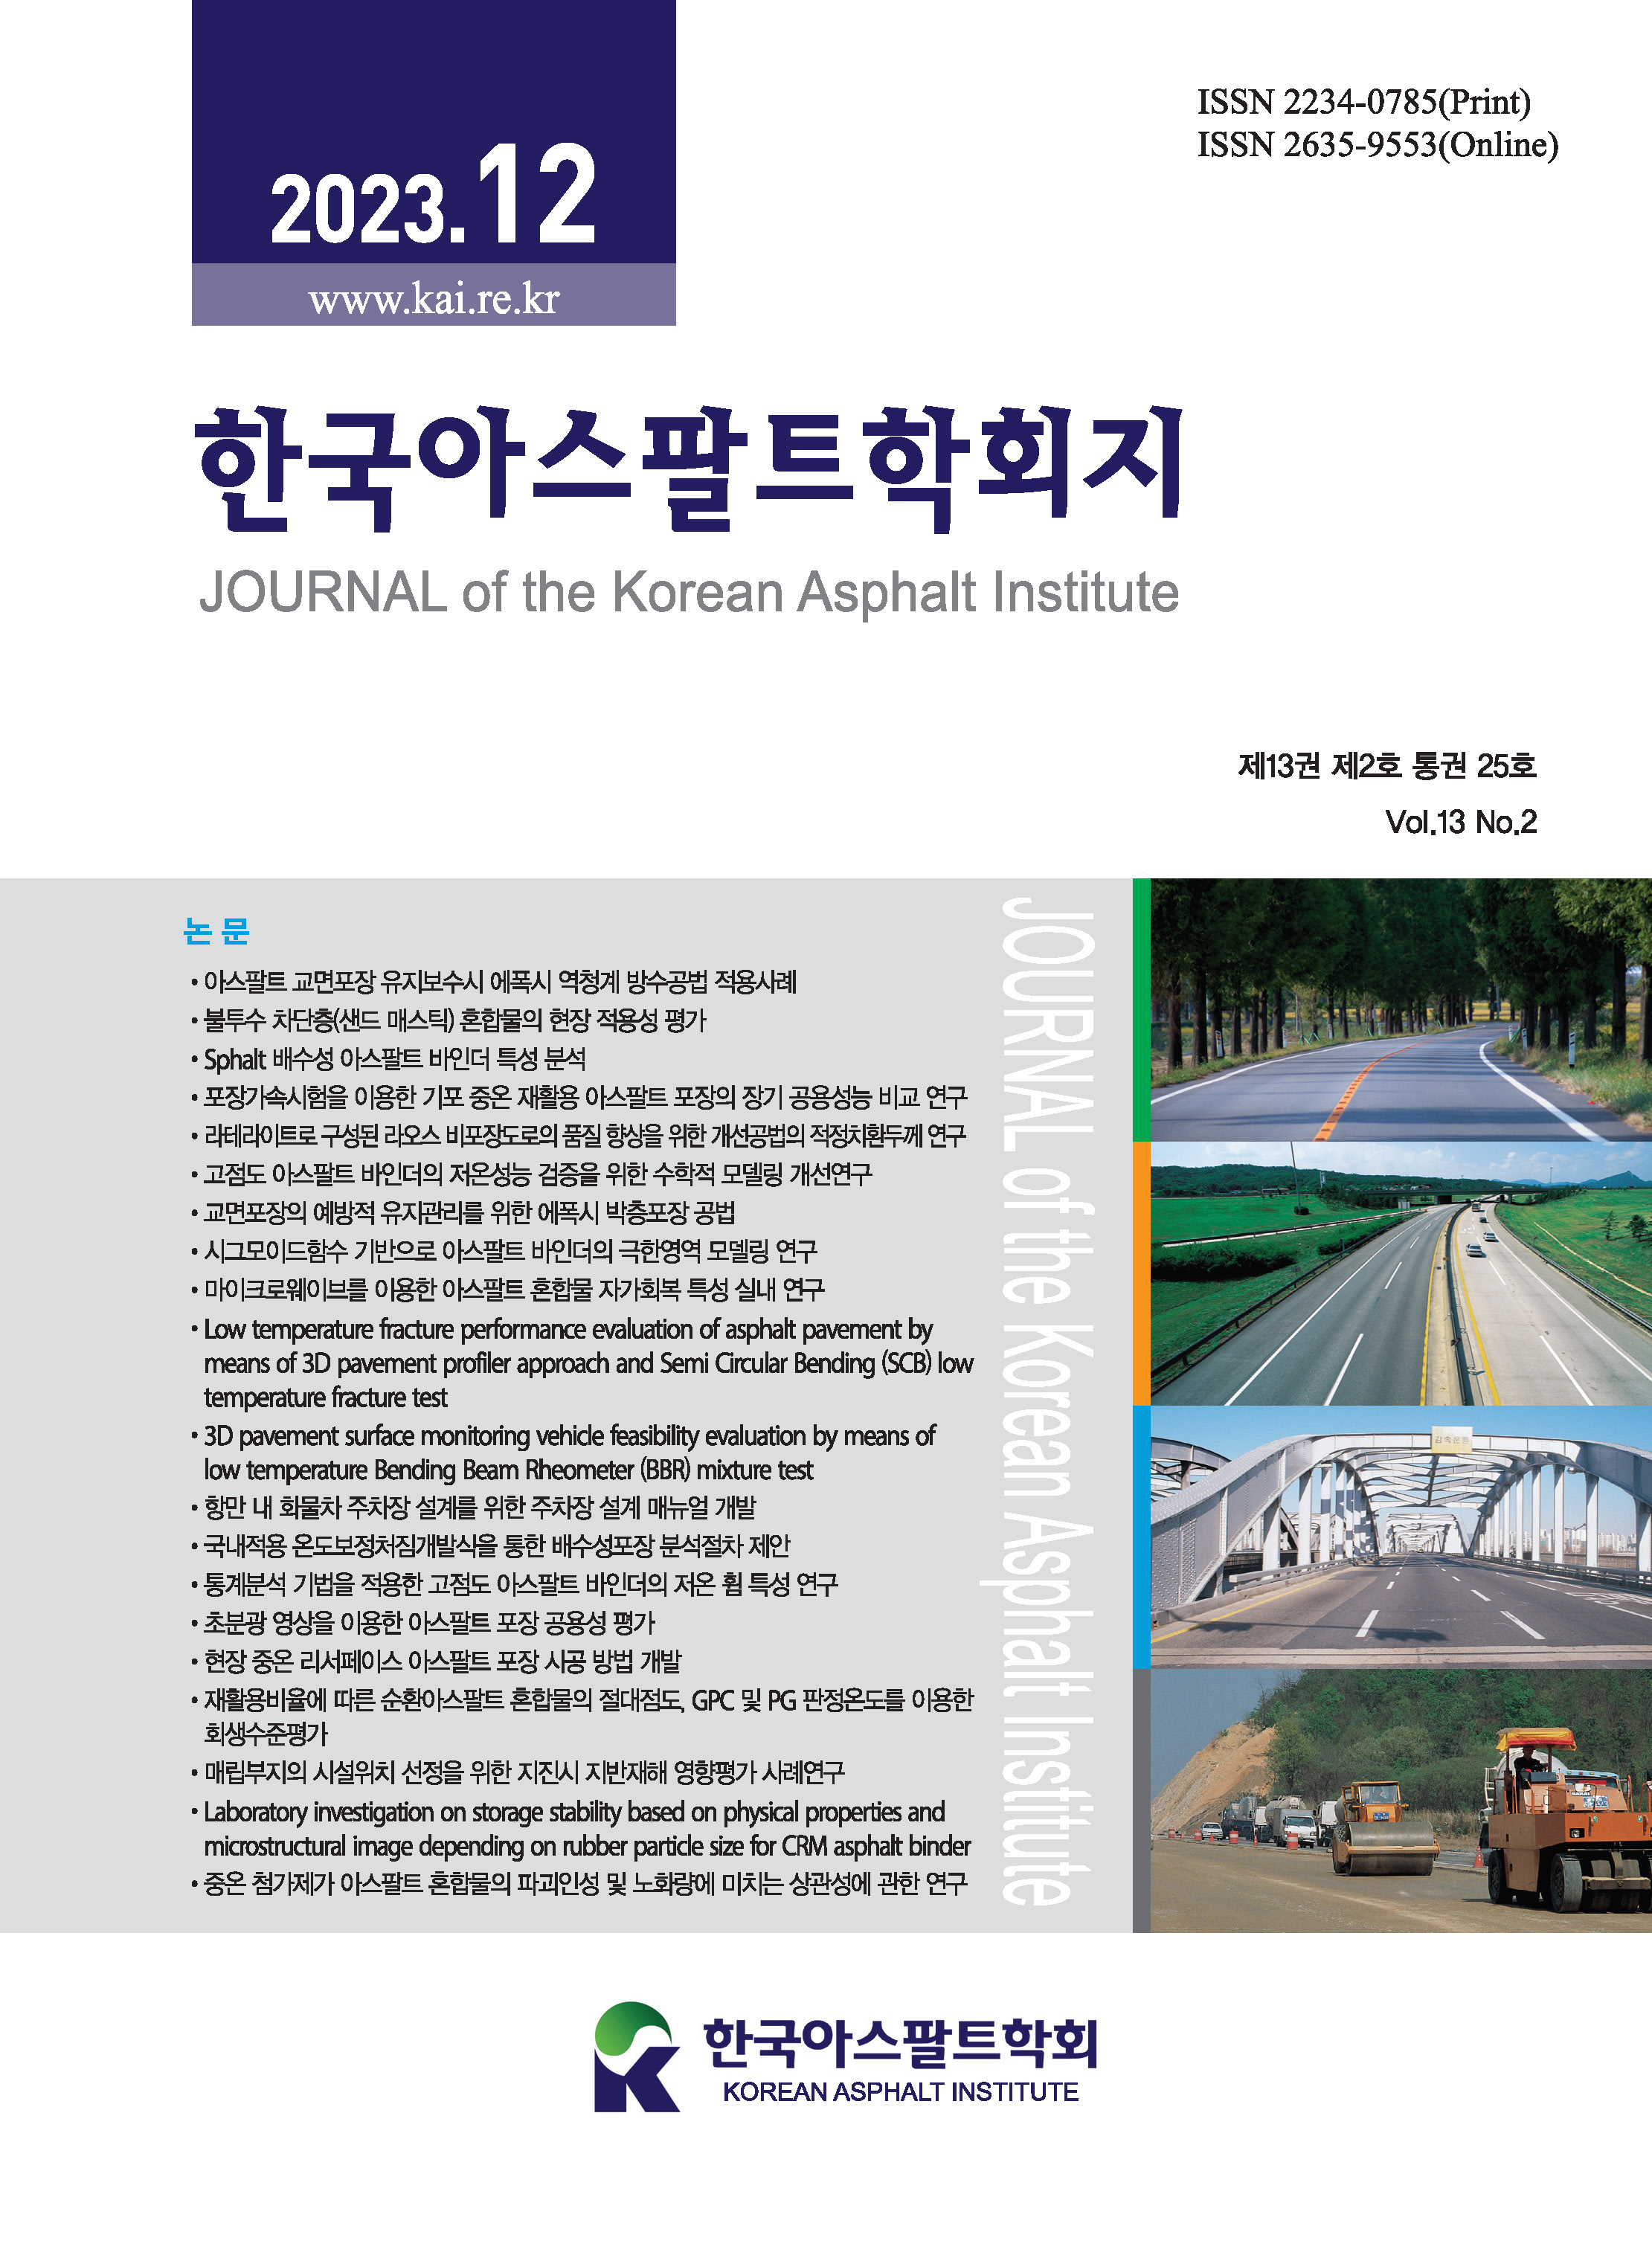 Journal of the Korean Asphalt Institute